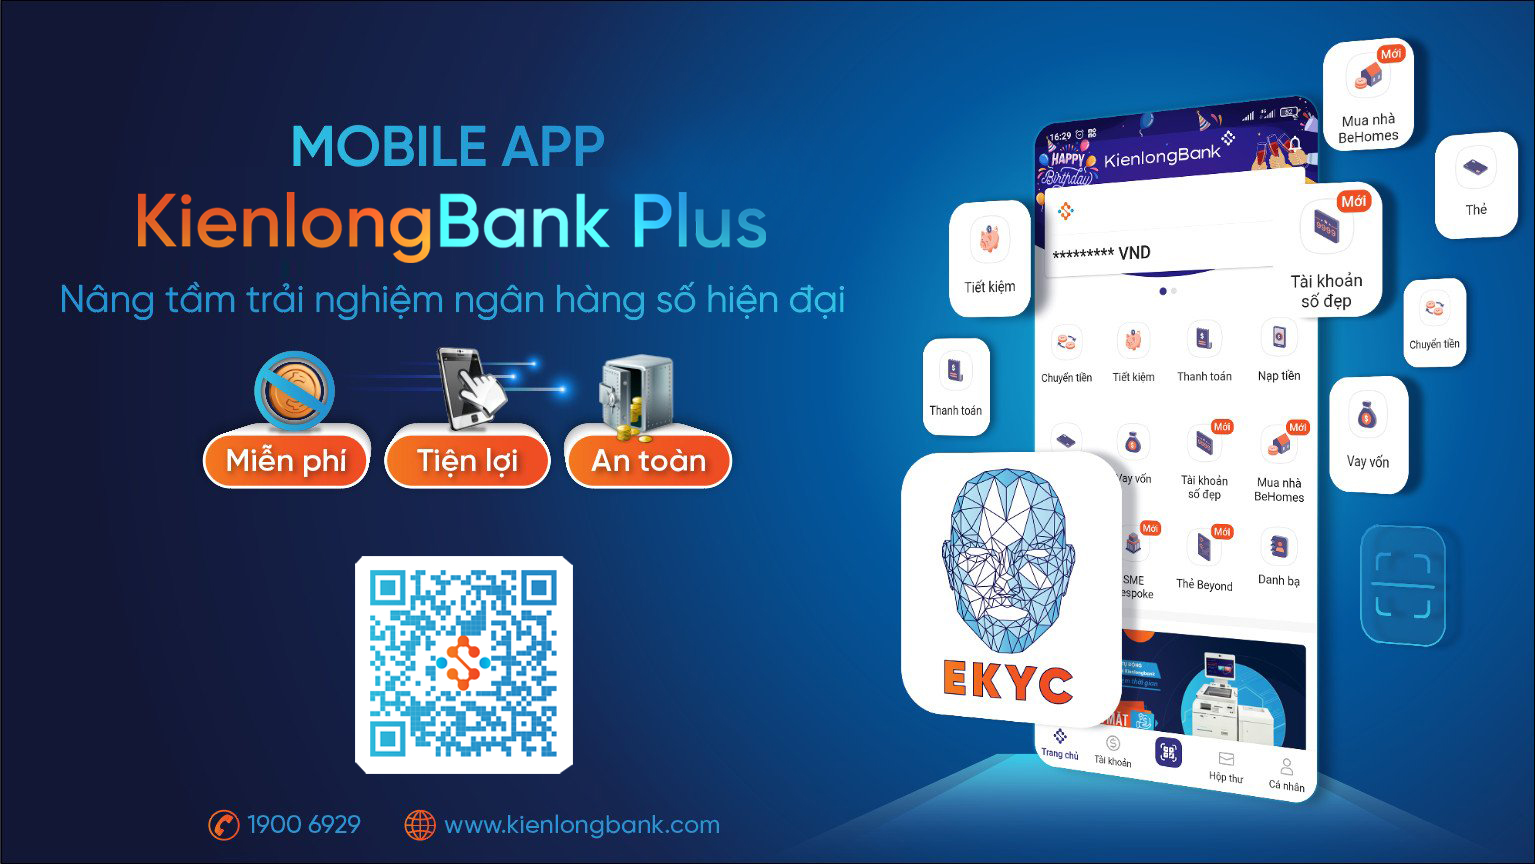 KienlongBank Plus mang đến trải nghiệm không giới hạn cho người dùng 